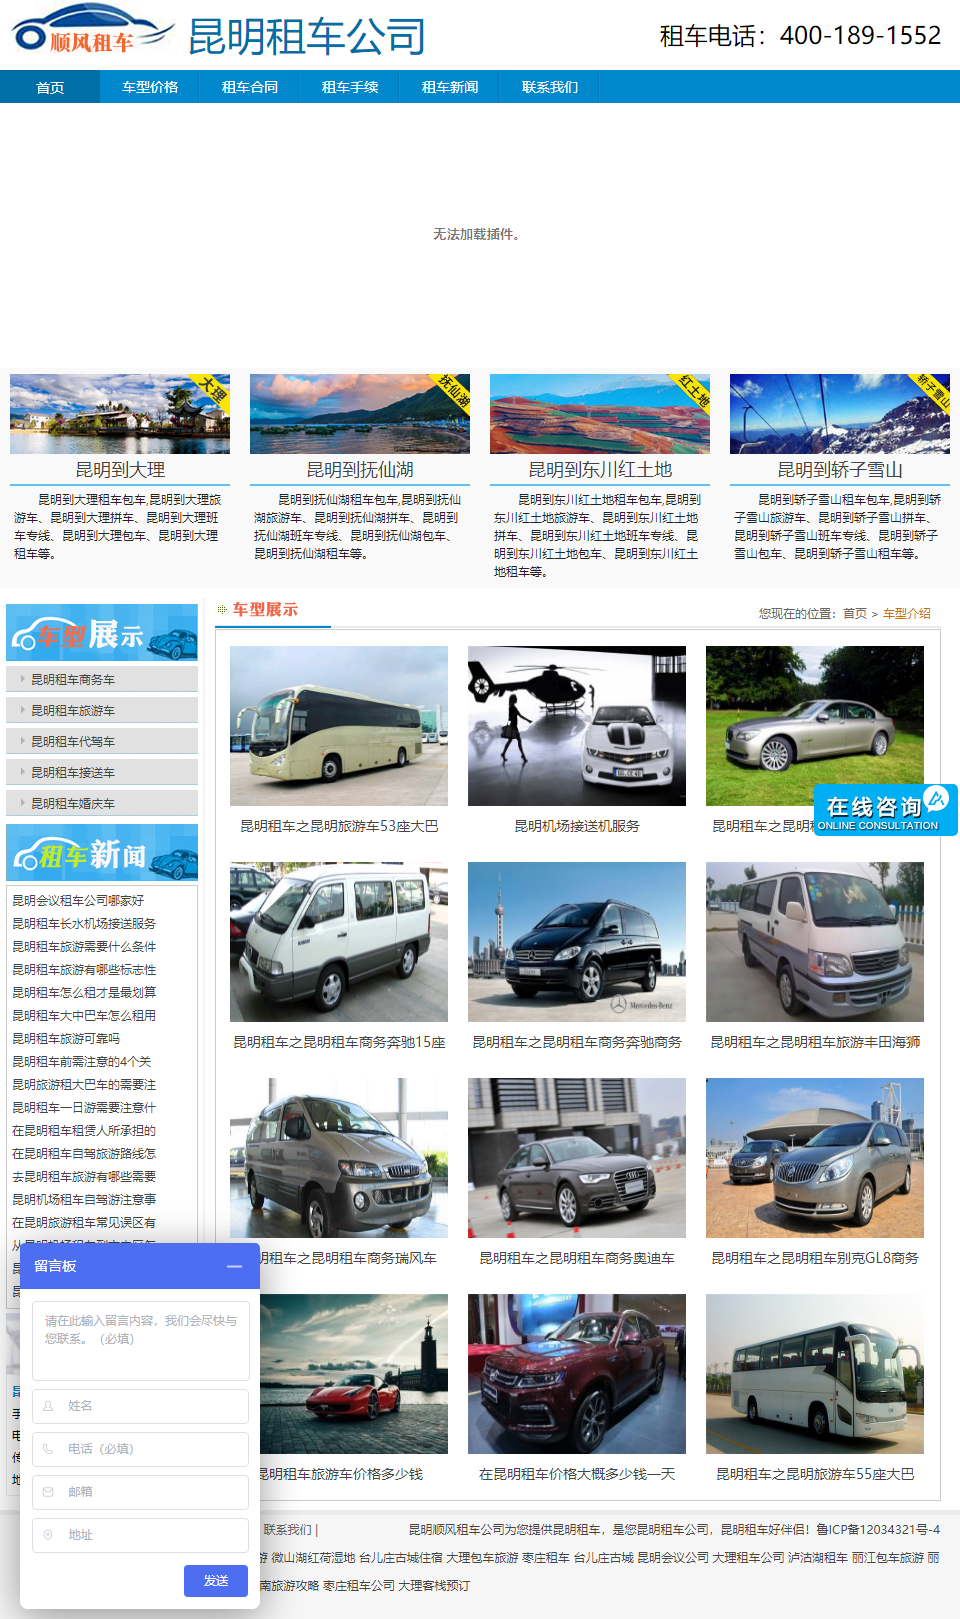 枣庄招商伙伴旅游发展有限公司网站案例